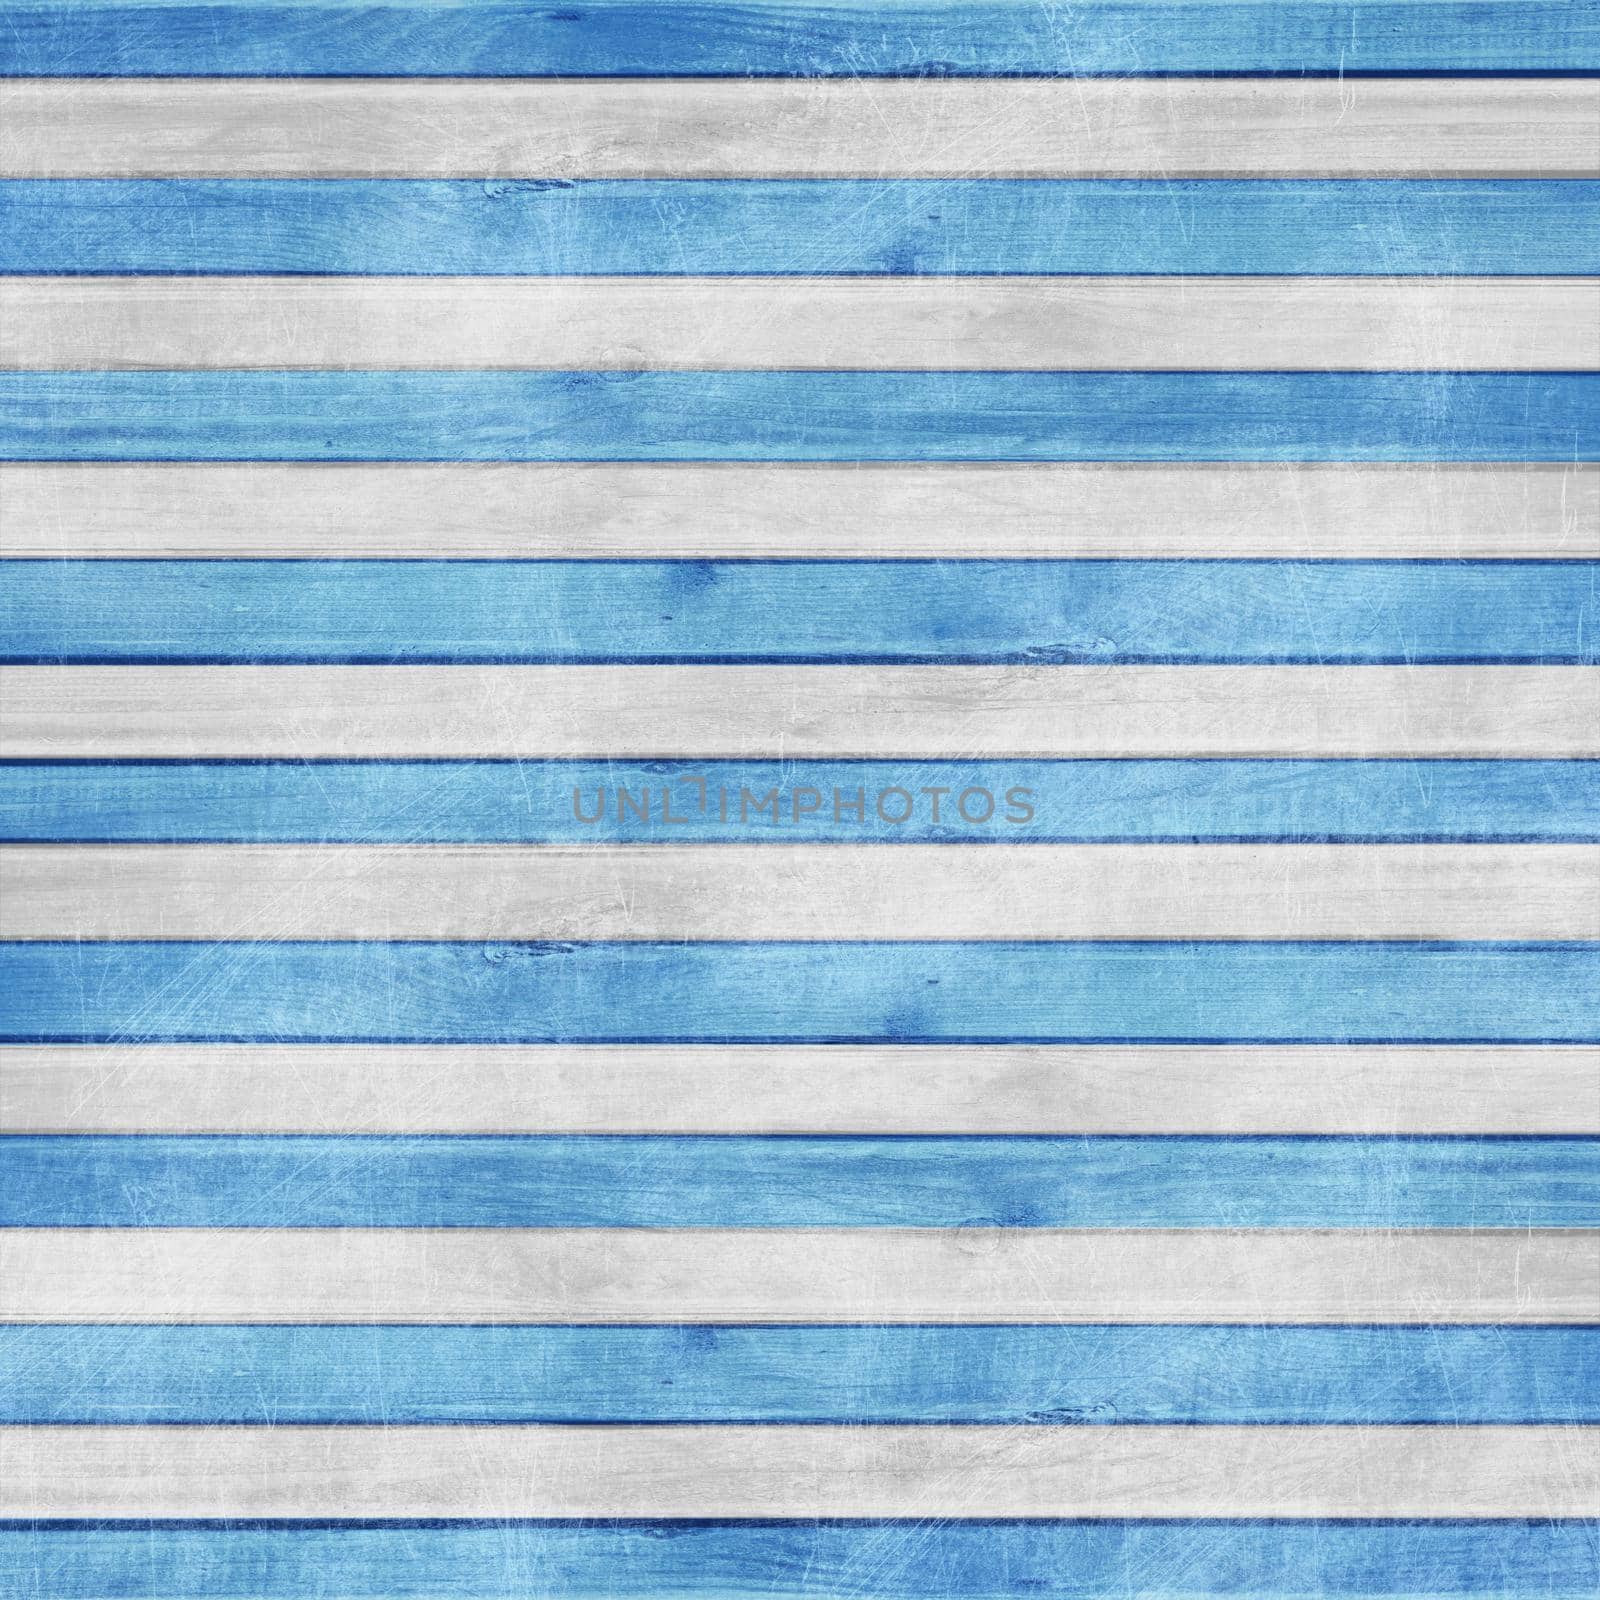 Blue Grunge Nautical Marine Striped Wood Background by kisika